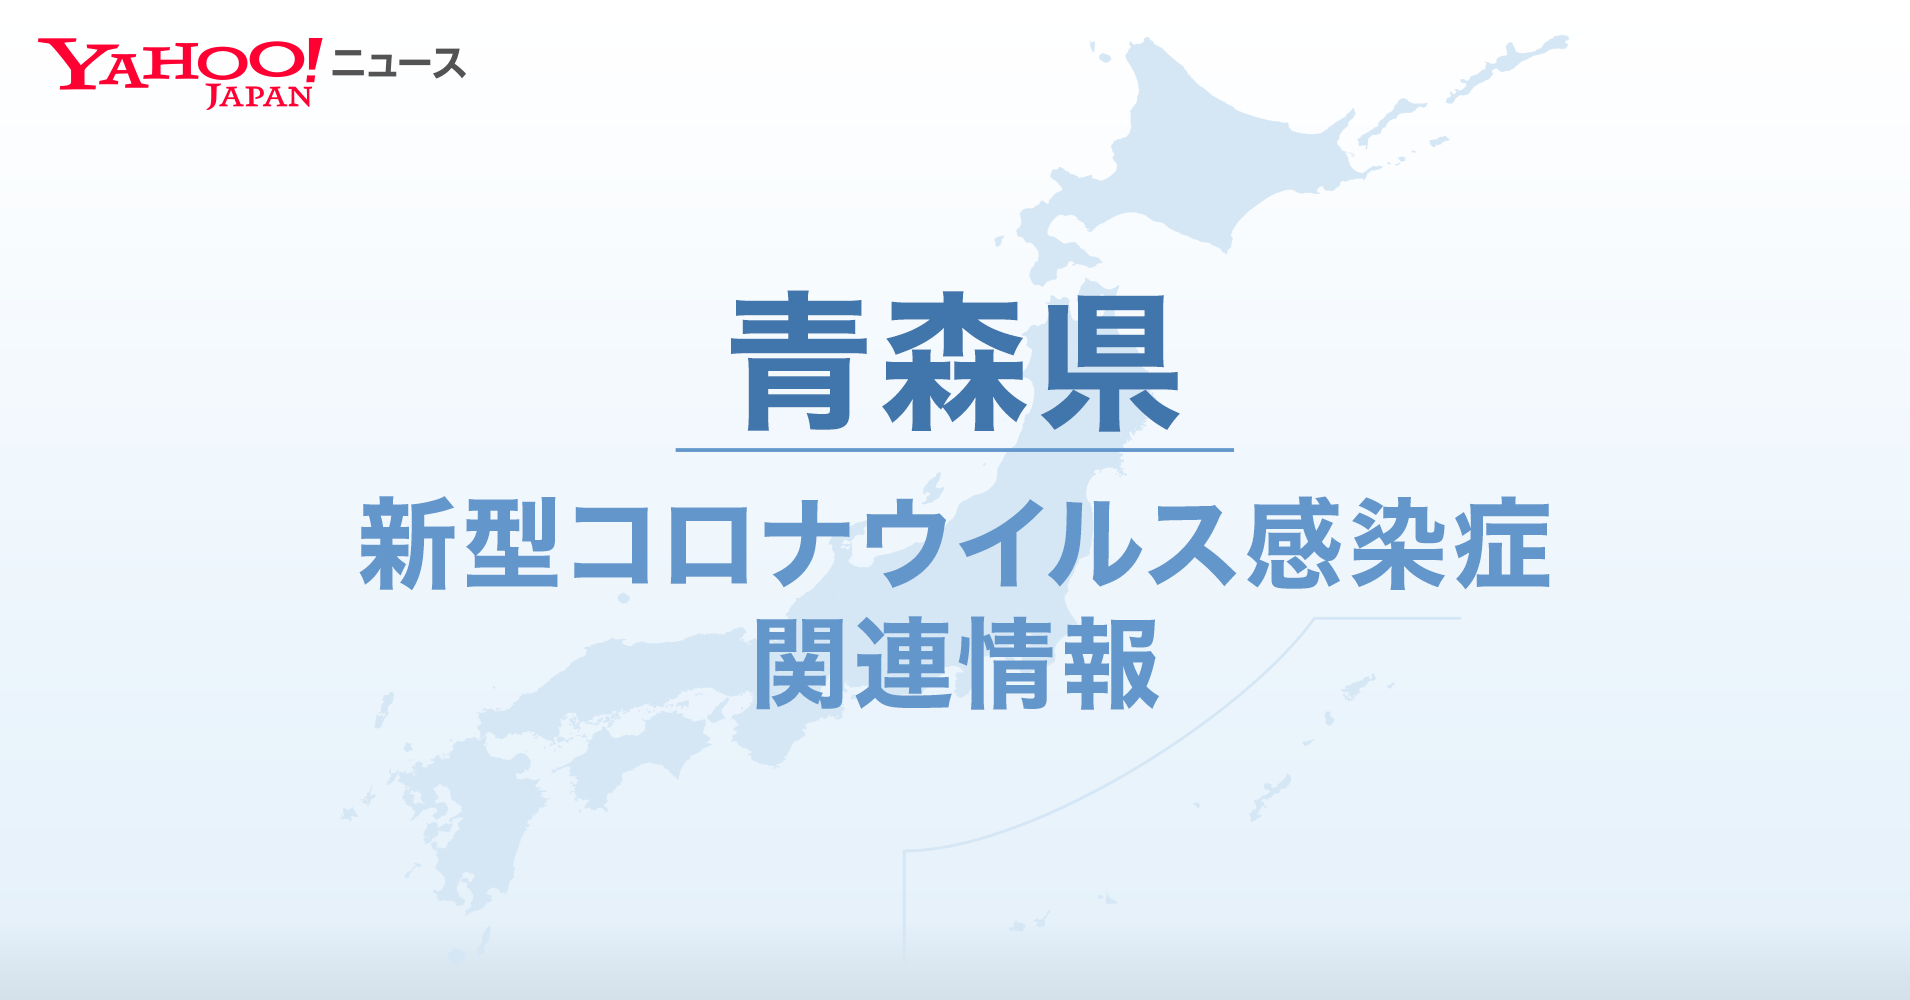 青森県 新型コロナ関連情報 Yahoo Japan